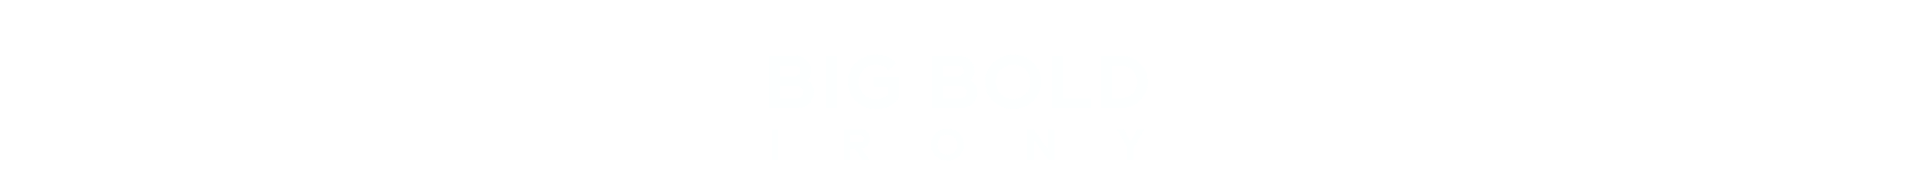 Big Bold Irony logo